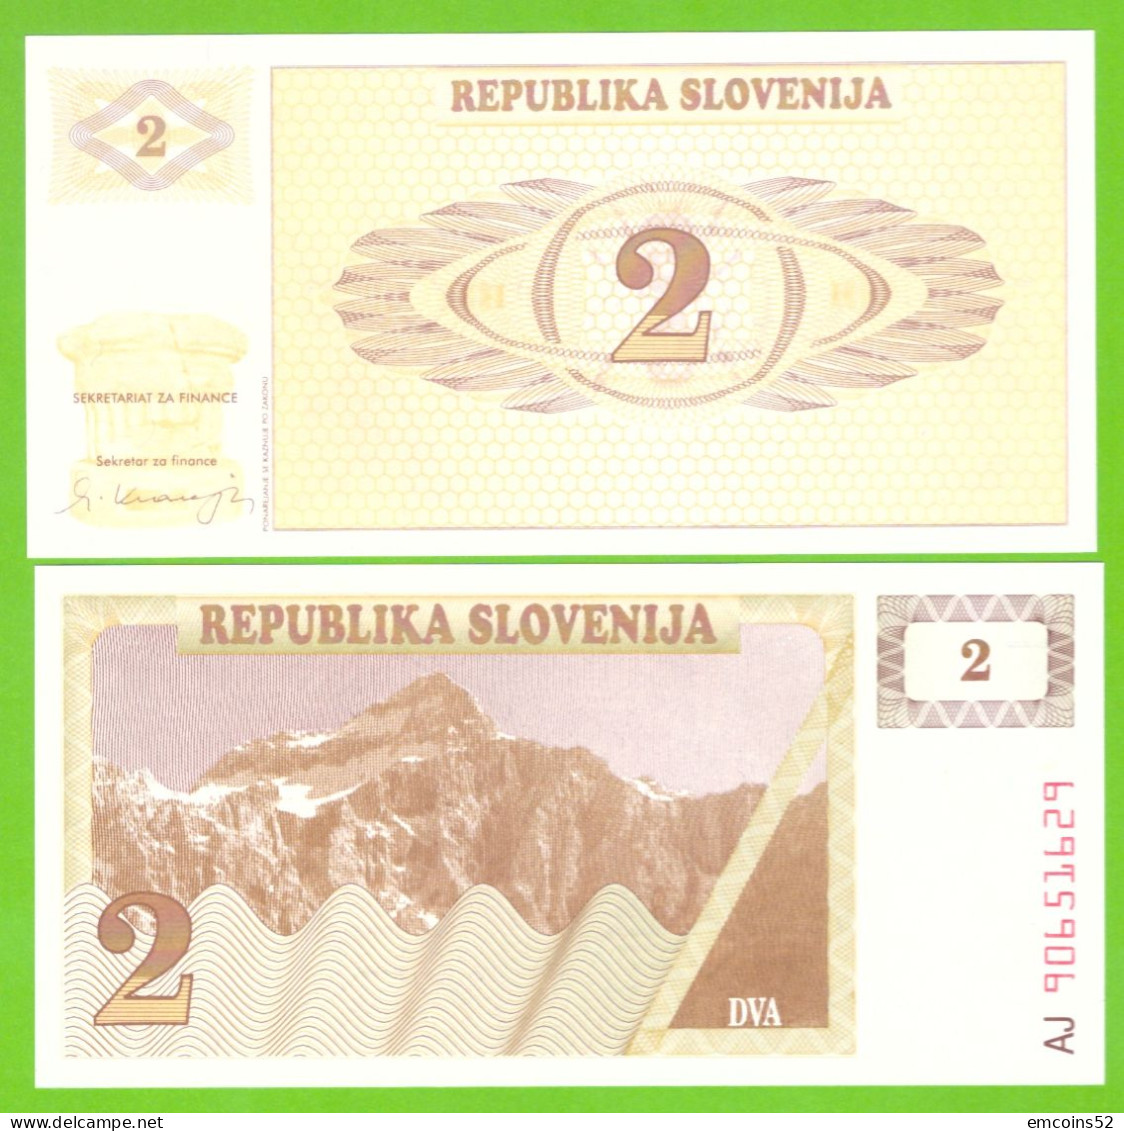 SLOVENIA 2 TOLARJA 1990 P-2 UNC - Slovénie